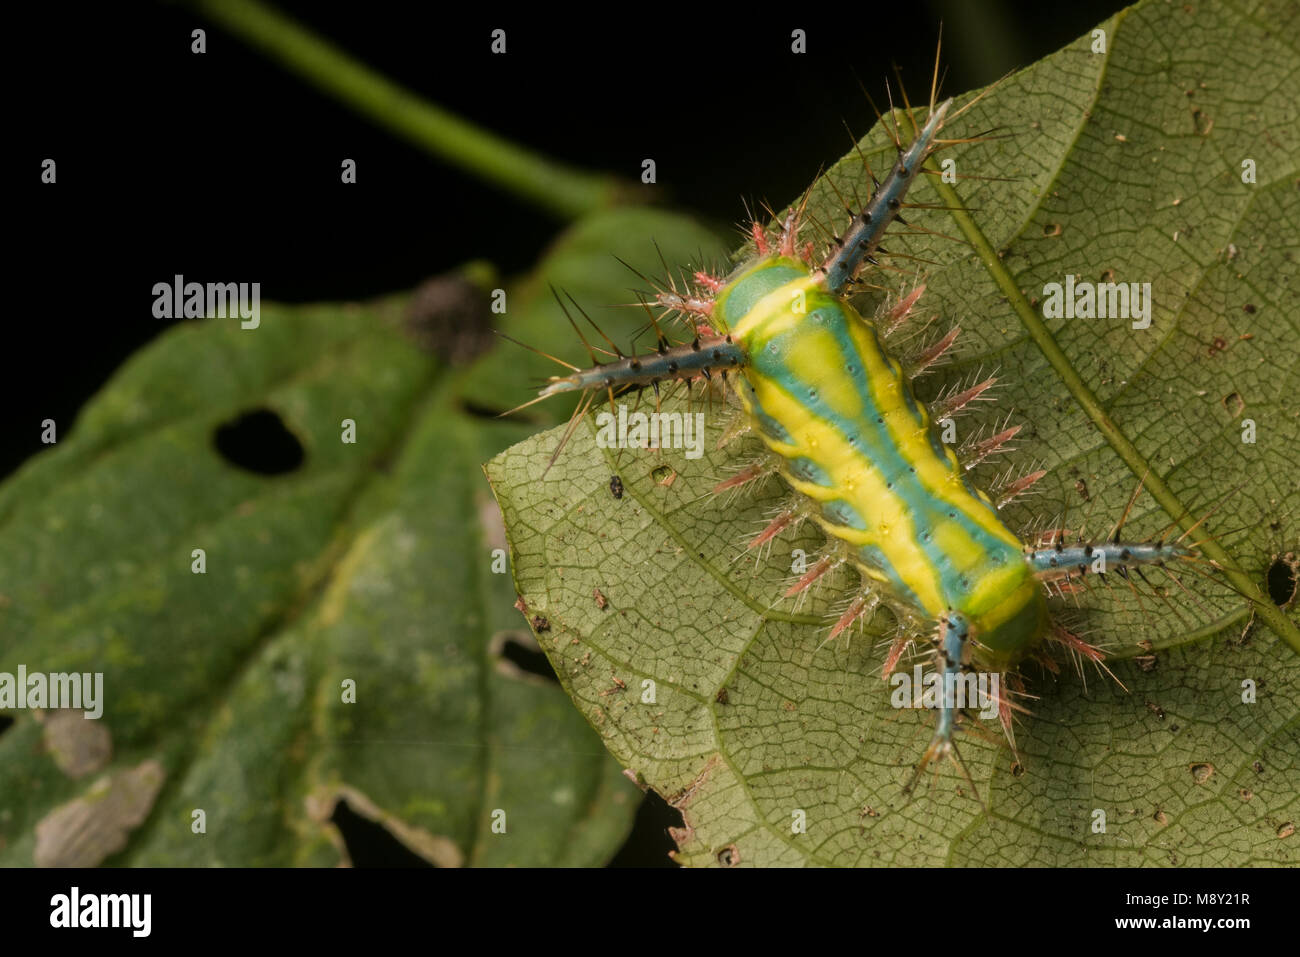 Ein Stechen slug Motte Caterpillar, die hübschen Farben potentielle Raubtiere weg bleiben wie die Raupe packs einen schmerzhaften Stich warnen. Stockfoto